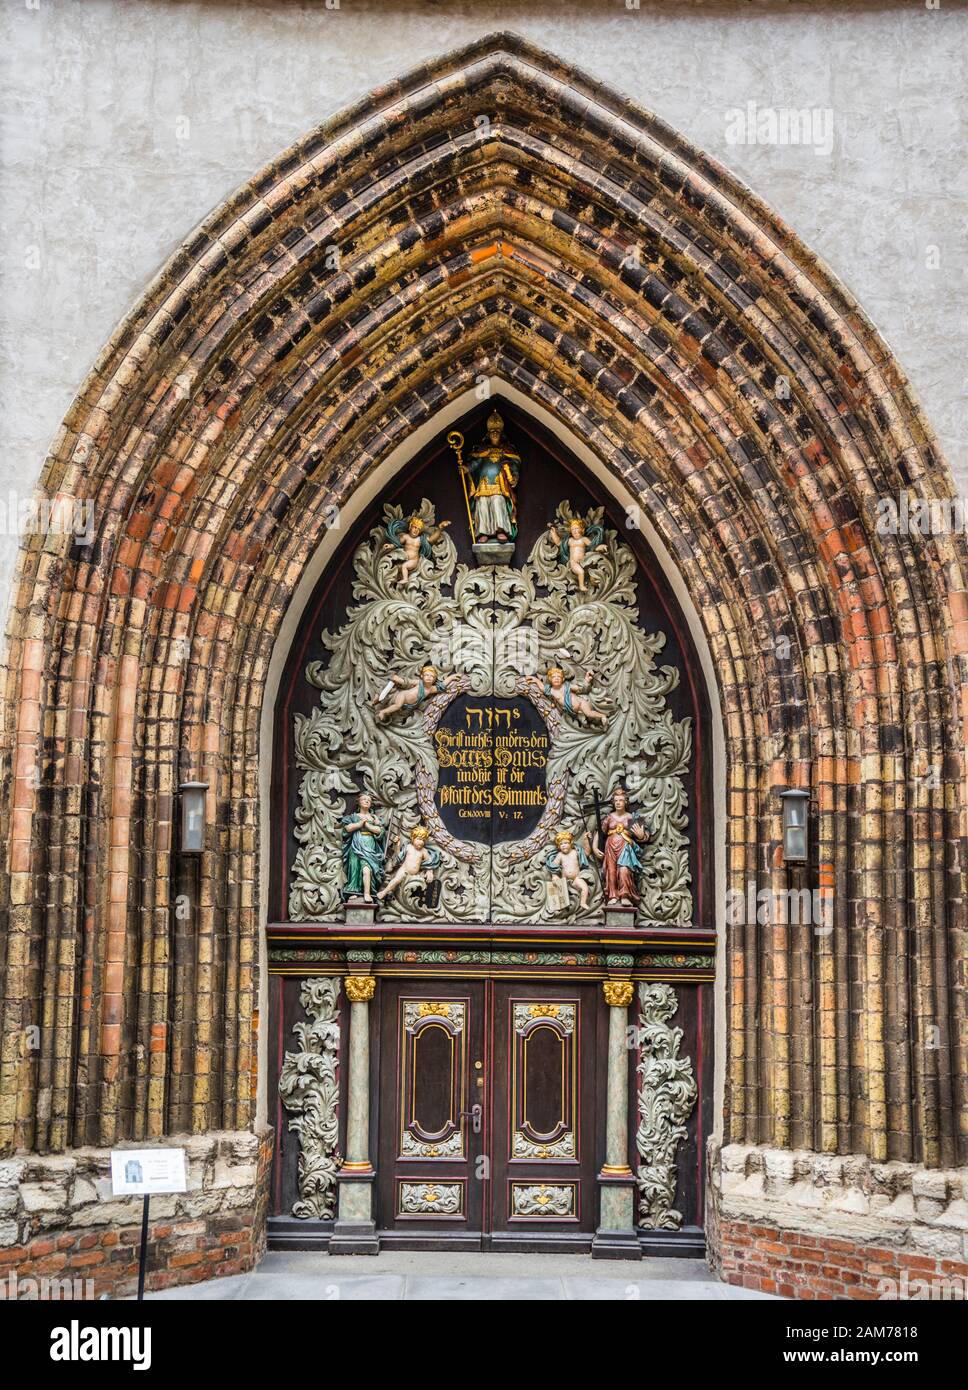 West Portal of Stralsund's St. Nicholas Church (Nikolaikirche), Hanseatic town of Stralsund, Mecklenburg-Vorpommern, Germany Stock Photo